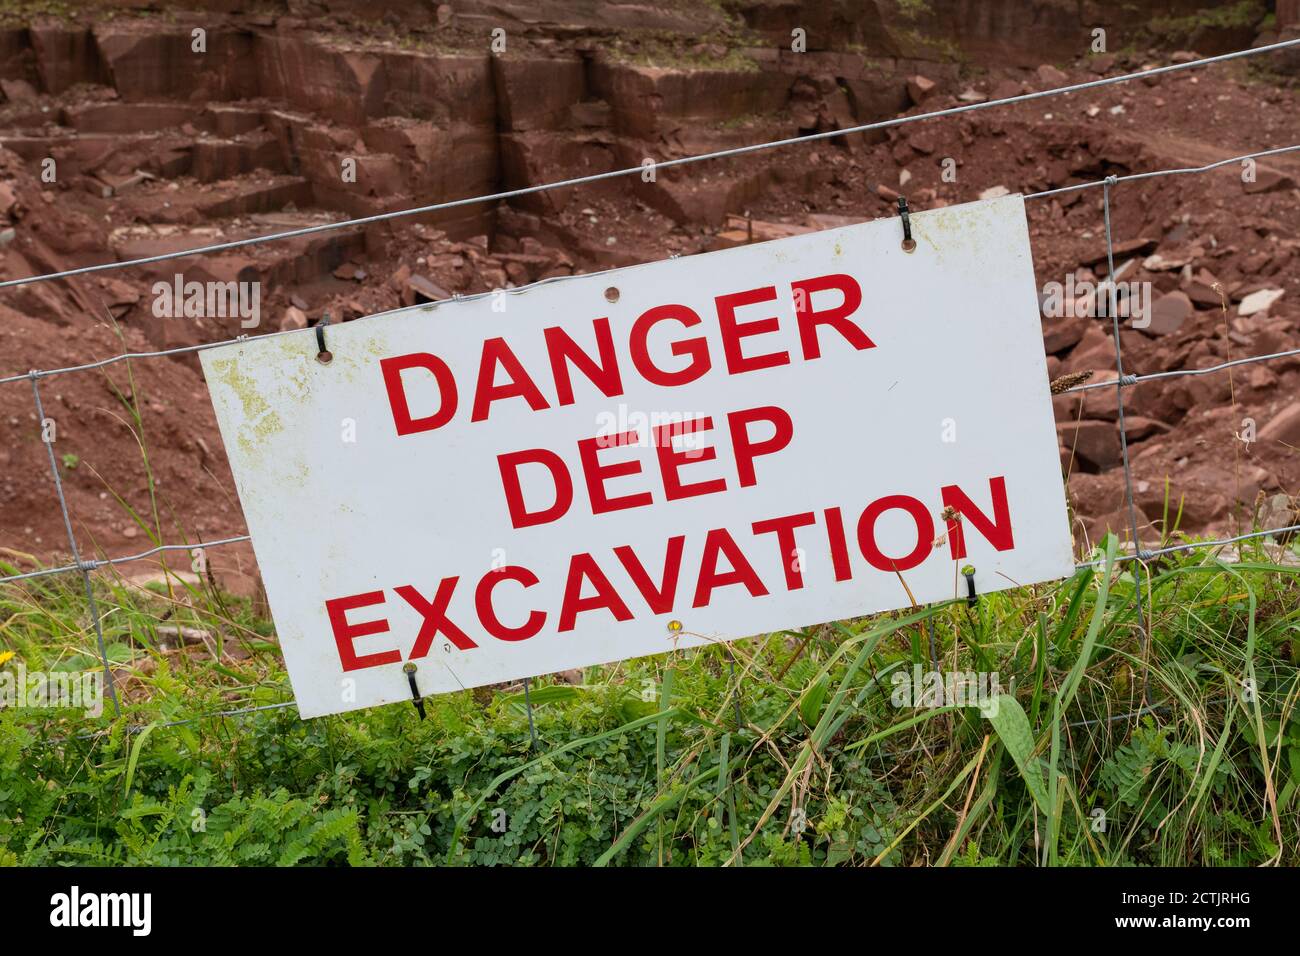 Danger Deep excavation panneau d'avertissement à Marshalls St Bees Quarry, St Bees, Cumbria, Angleterre, Royaume-Uni Banque D'Images